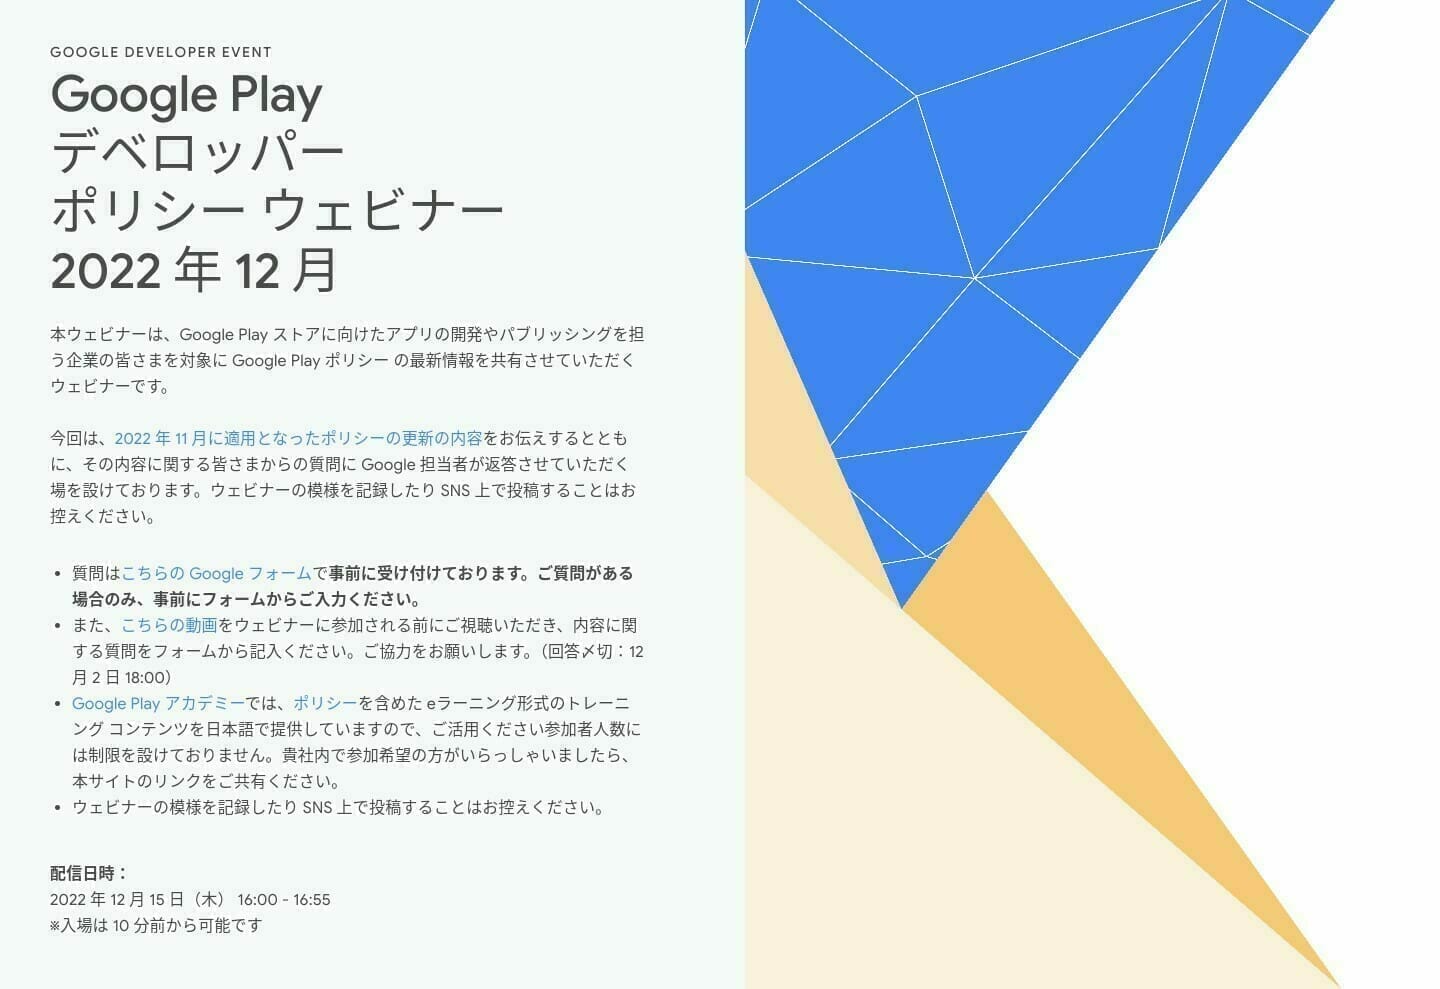 [Google Play] Google Play デベロッパー ポリシー ウェビナー 2022 年 12 月